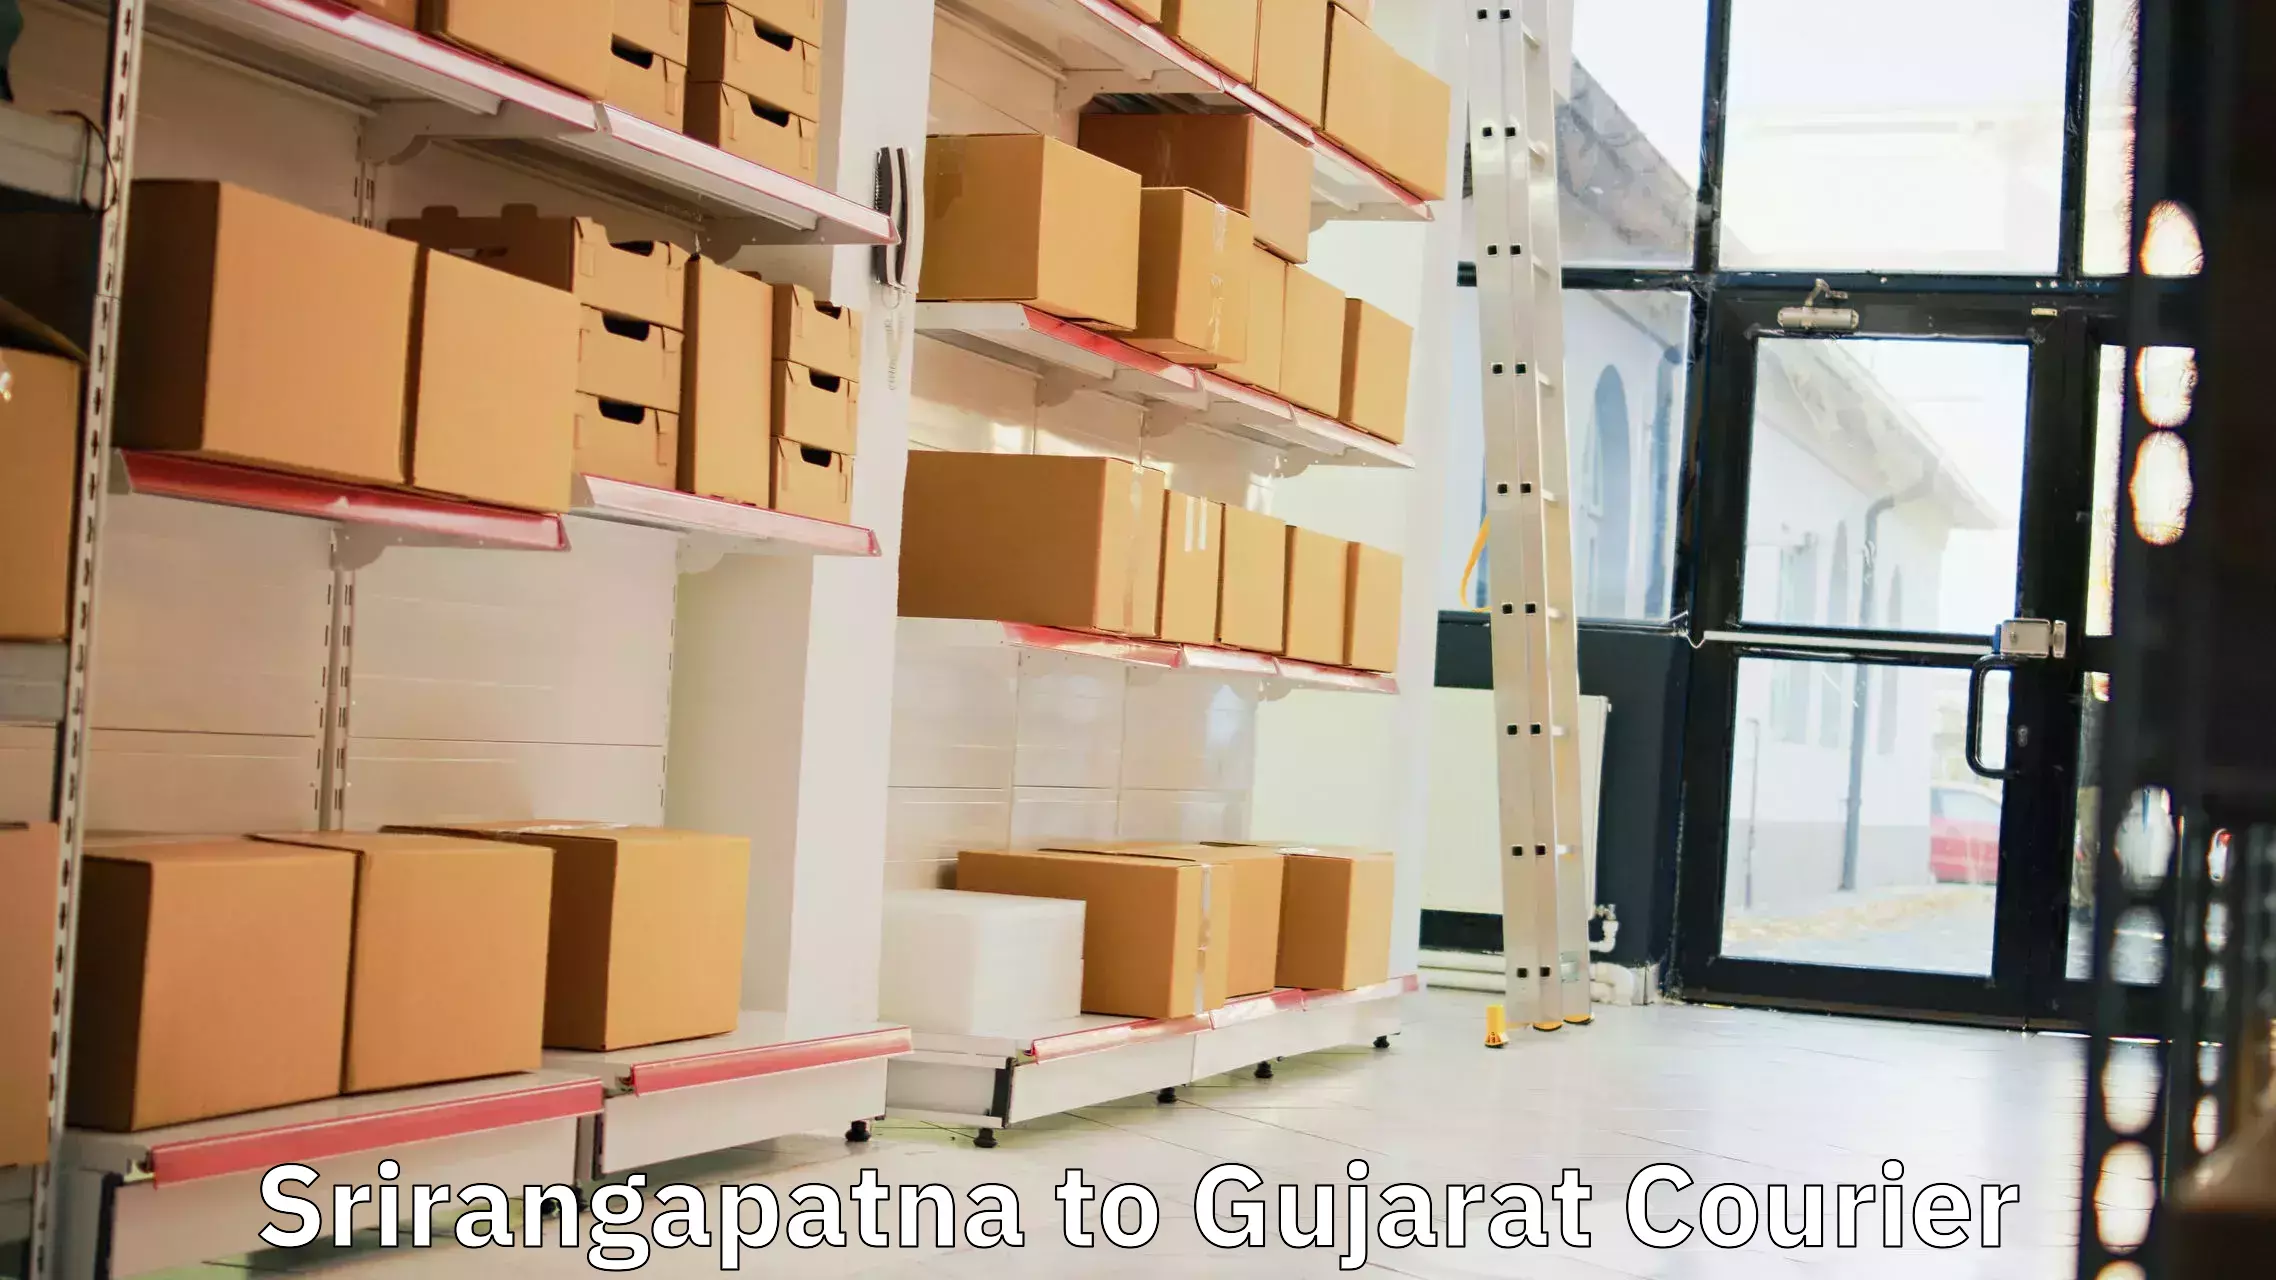 Courier service comparison Srirangapatna to Gujarat